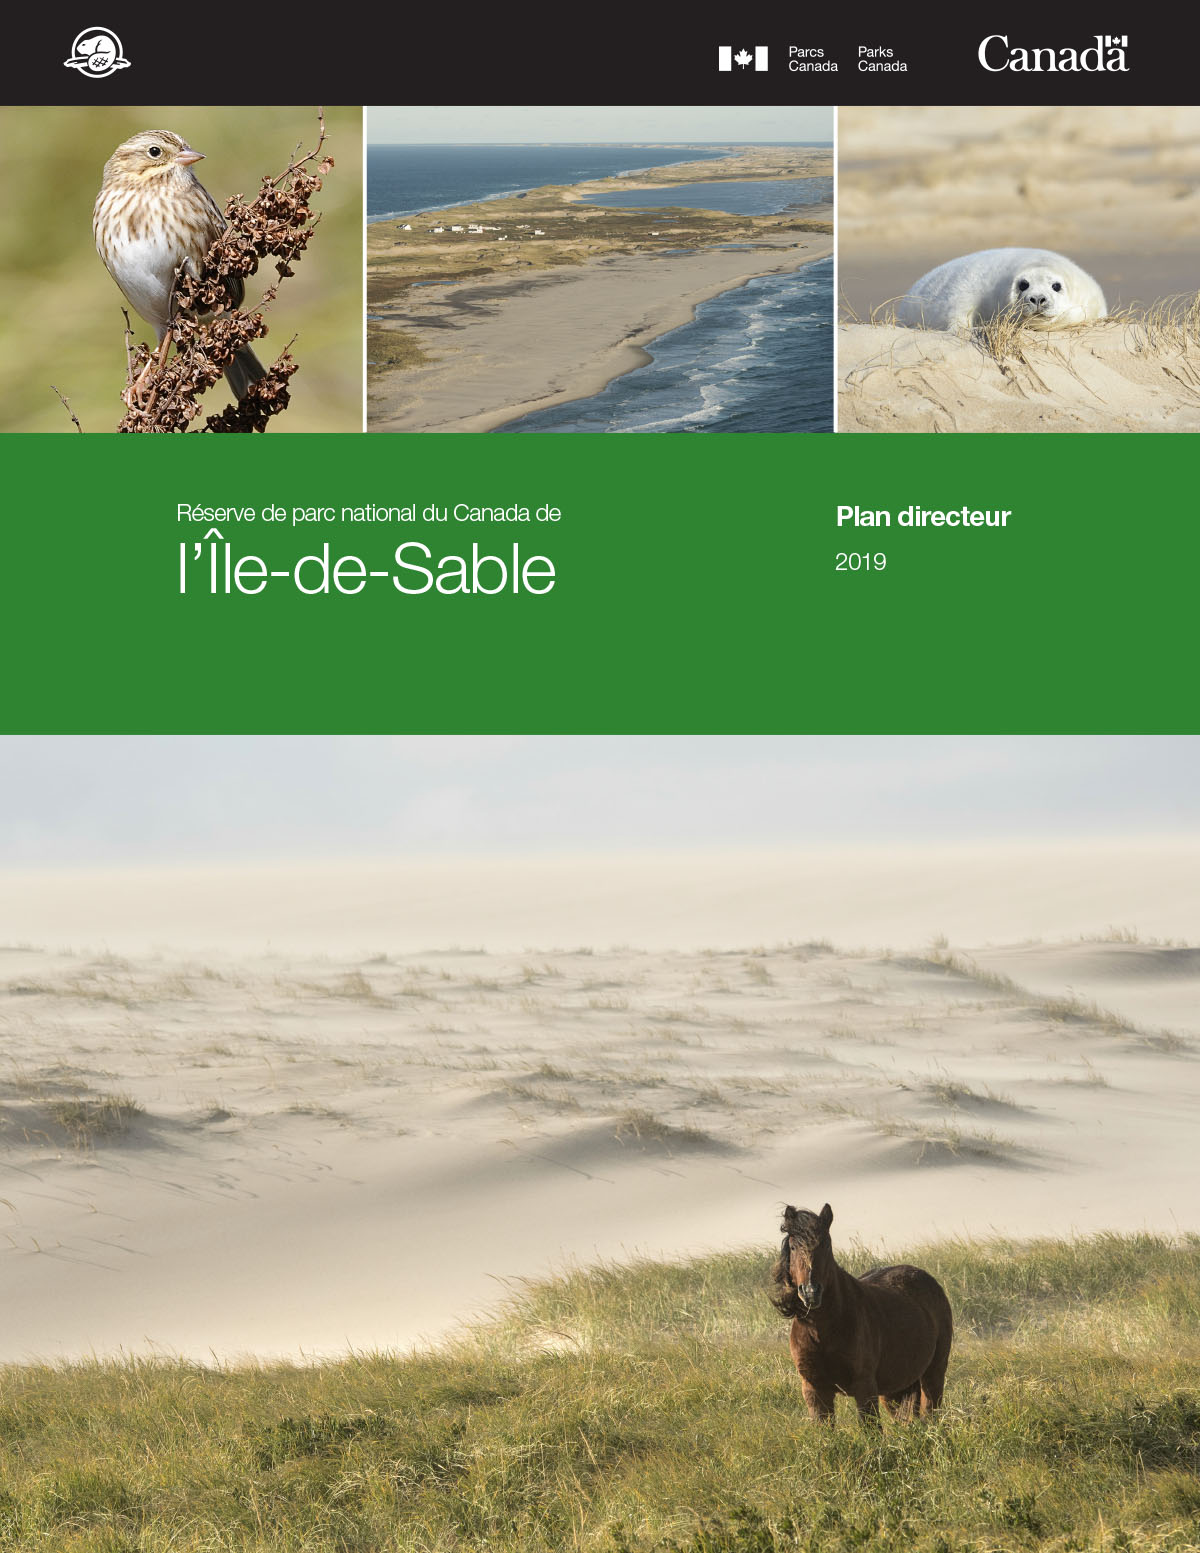  Cinq images: un petit oiseau. Une plage étroite. Un phoque blanc Un cheval sauvage Un rectangle vert avec du texte blanc qui dit PLAN DIRECTEUR DE LA RÉSERVE DE PARC NATIONAL DU CANADA DE L’ÎLE-DE-SABLE, 2019.